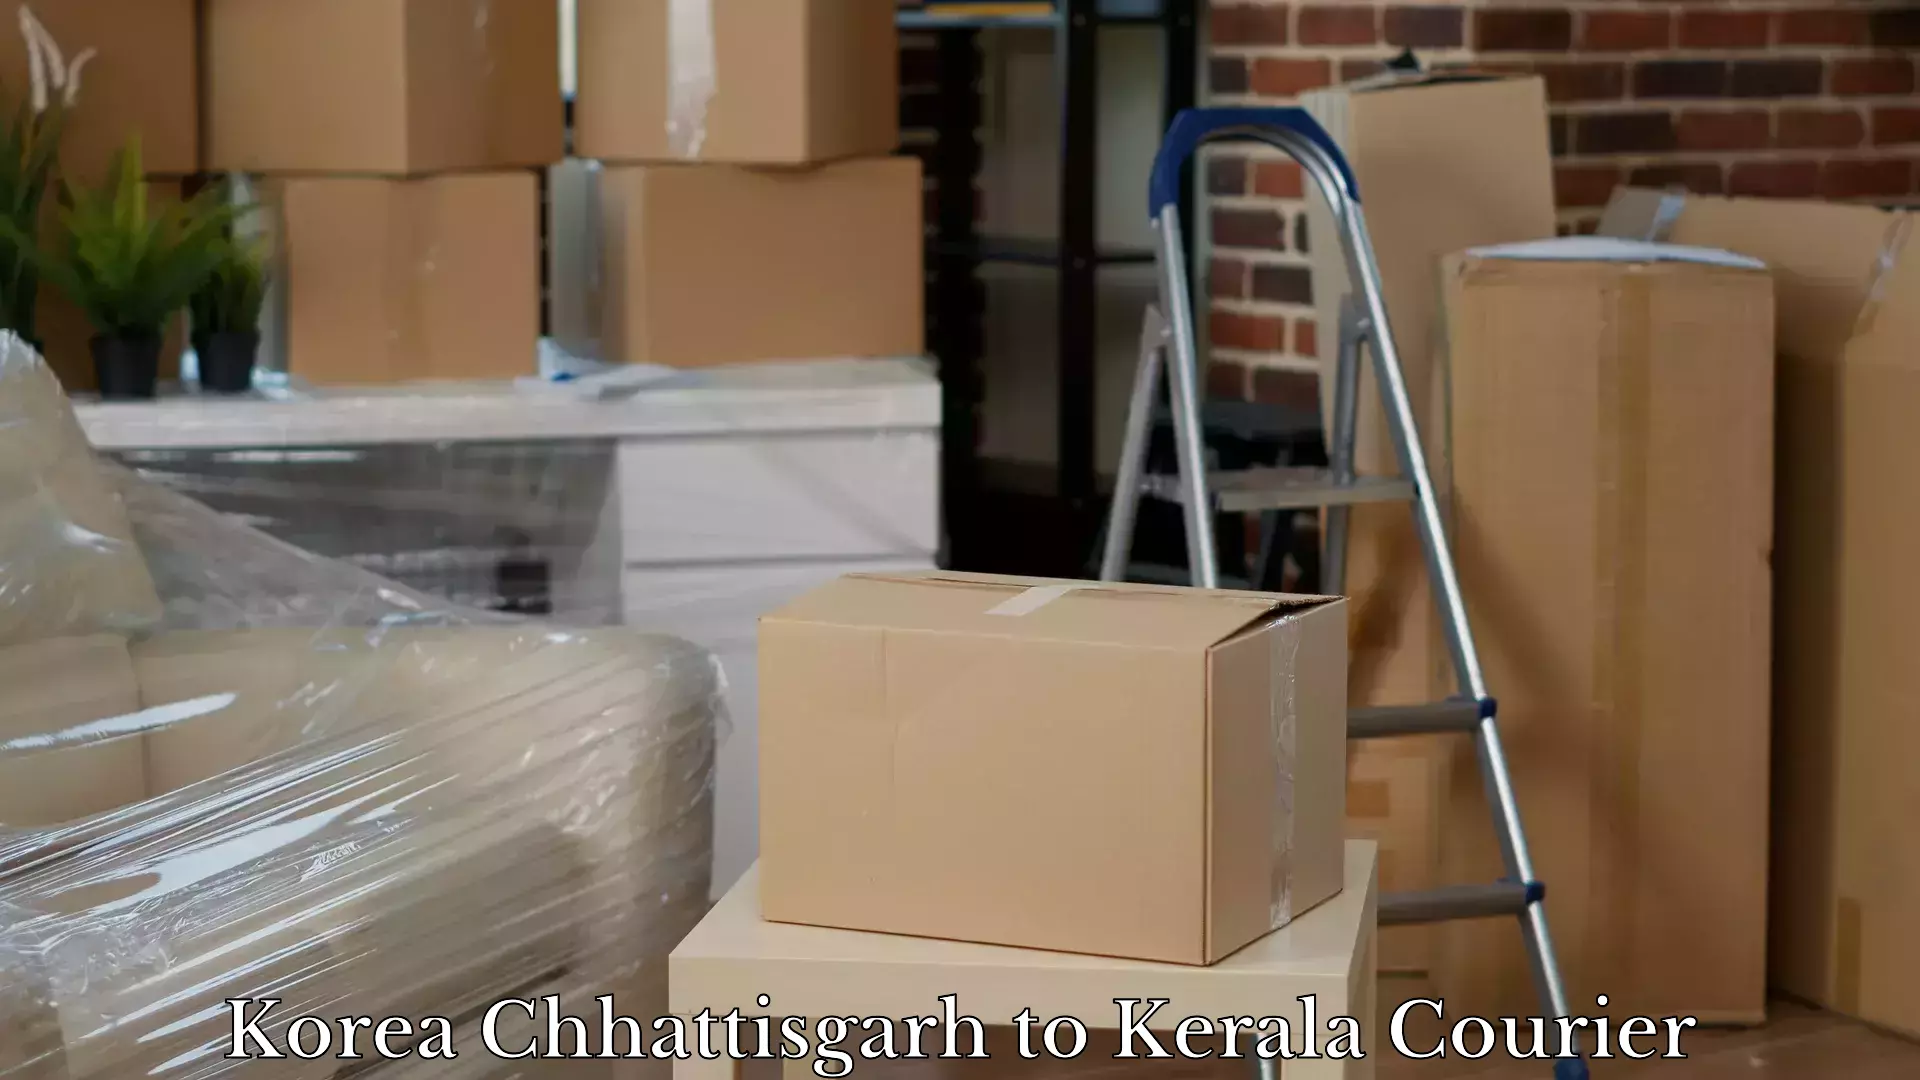 Airport luggage delivery in Korea Chhattisgarh to Manjeri